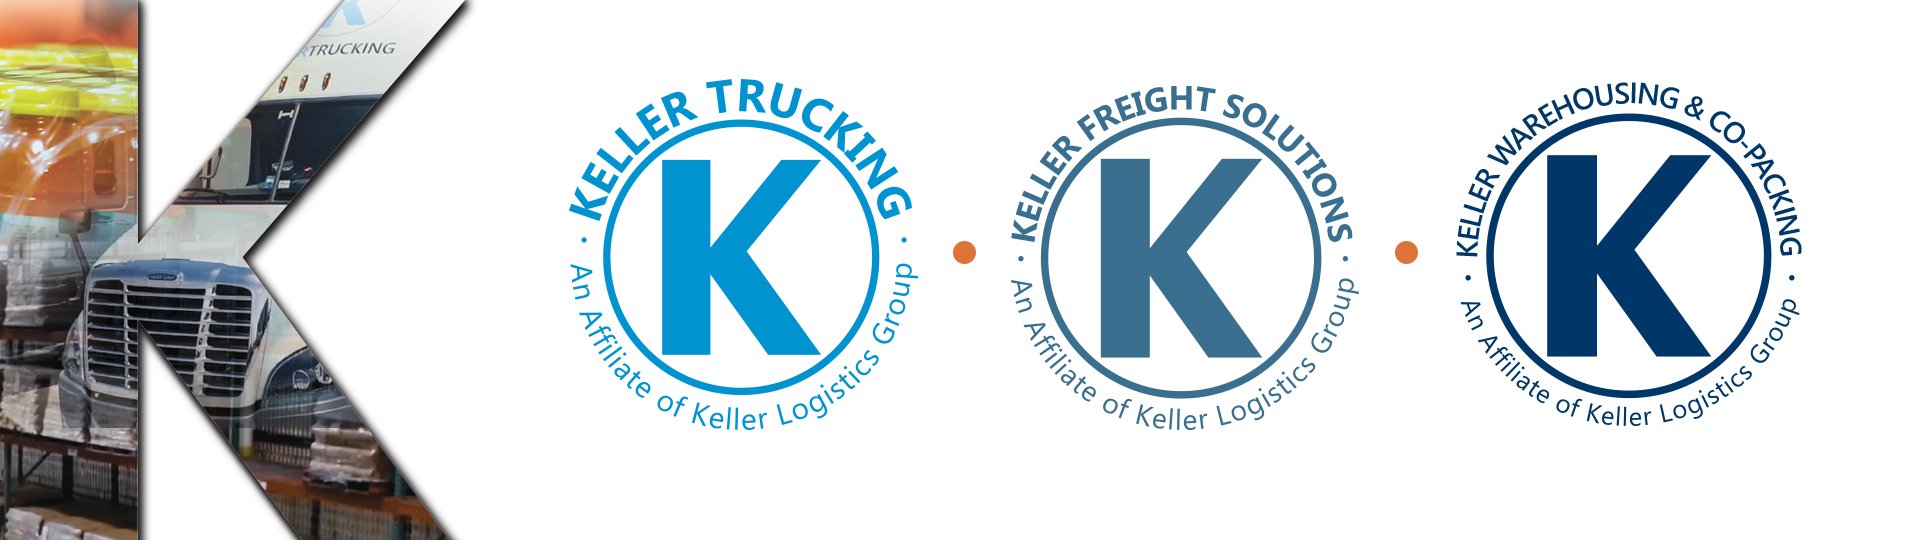 2020 Landing Page Header Image - Keller Logos 1920 x 540